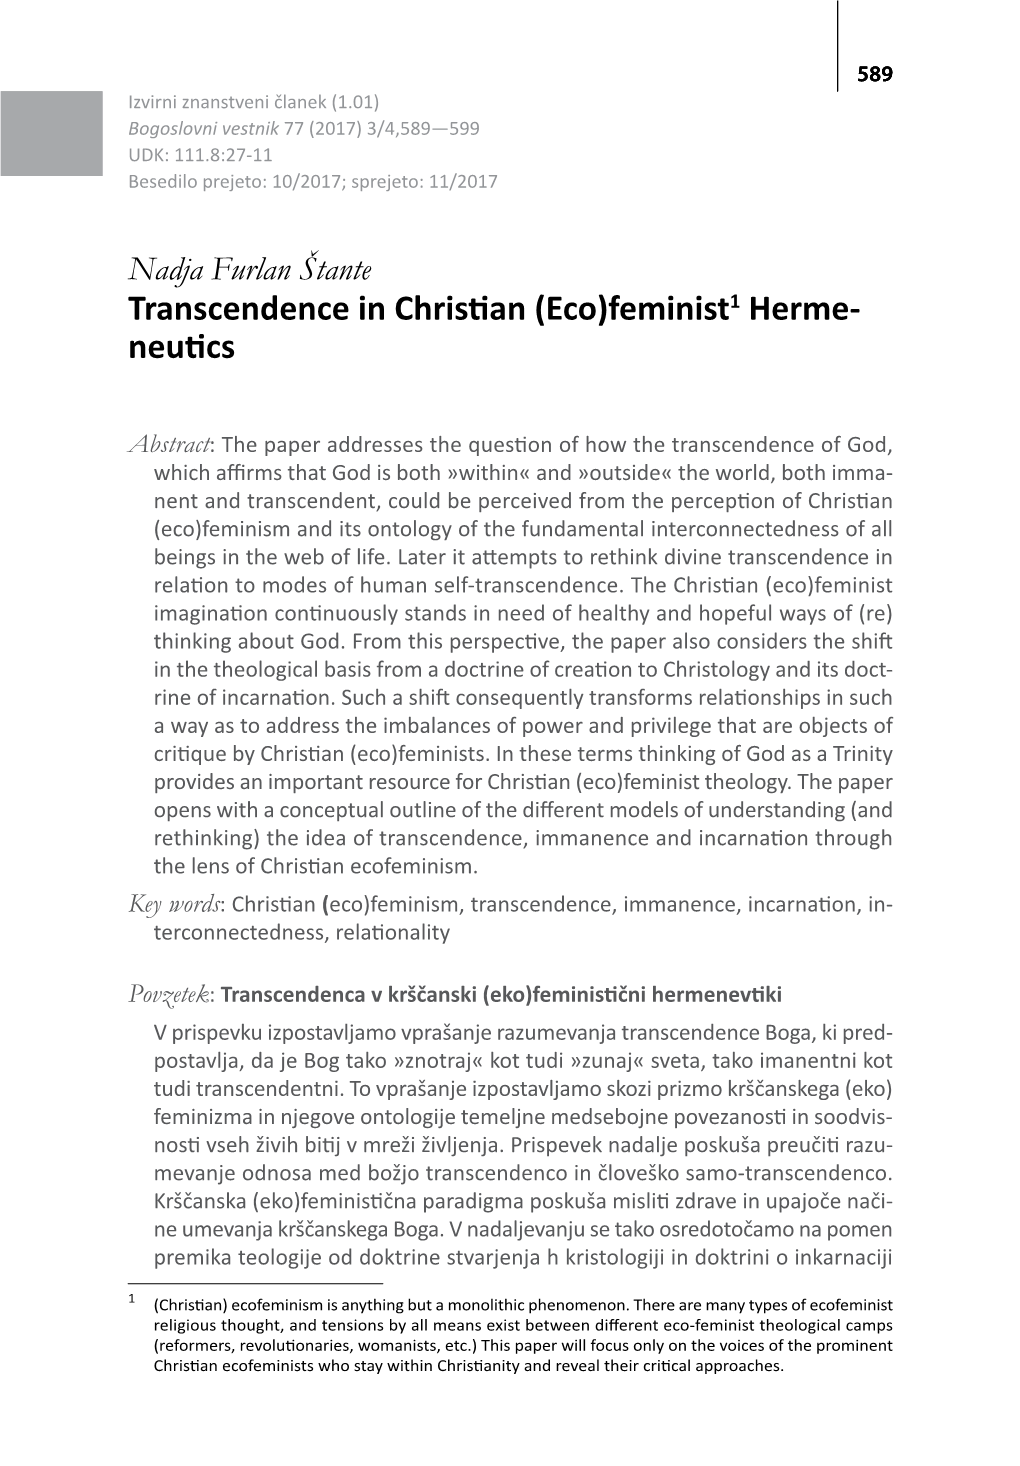 Transcendence in Christian (Eco)Feminist1 Herme- Neutics